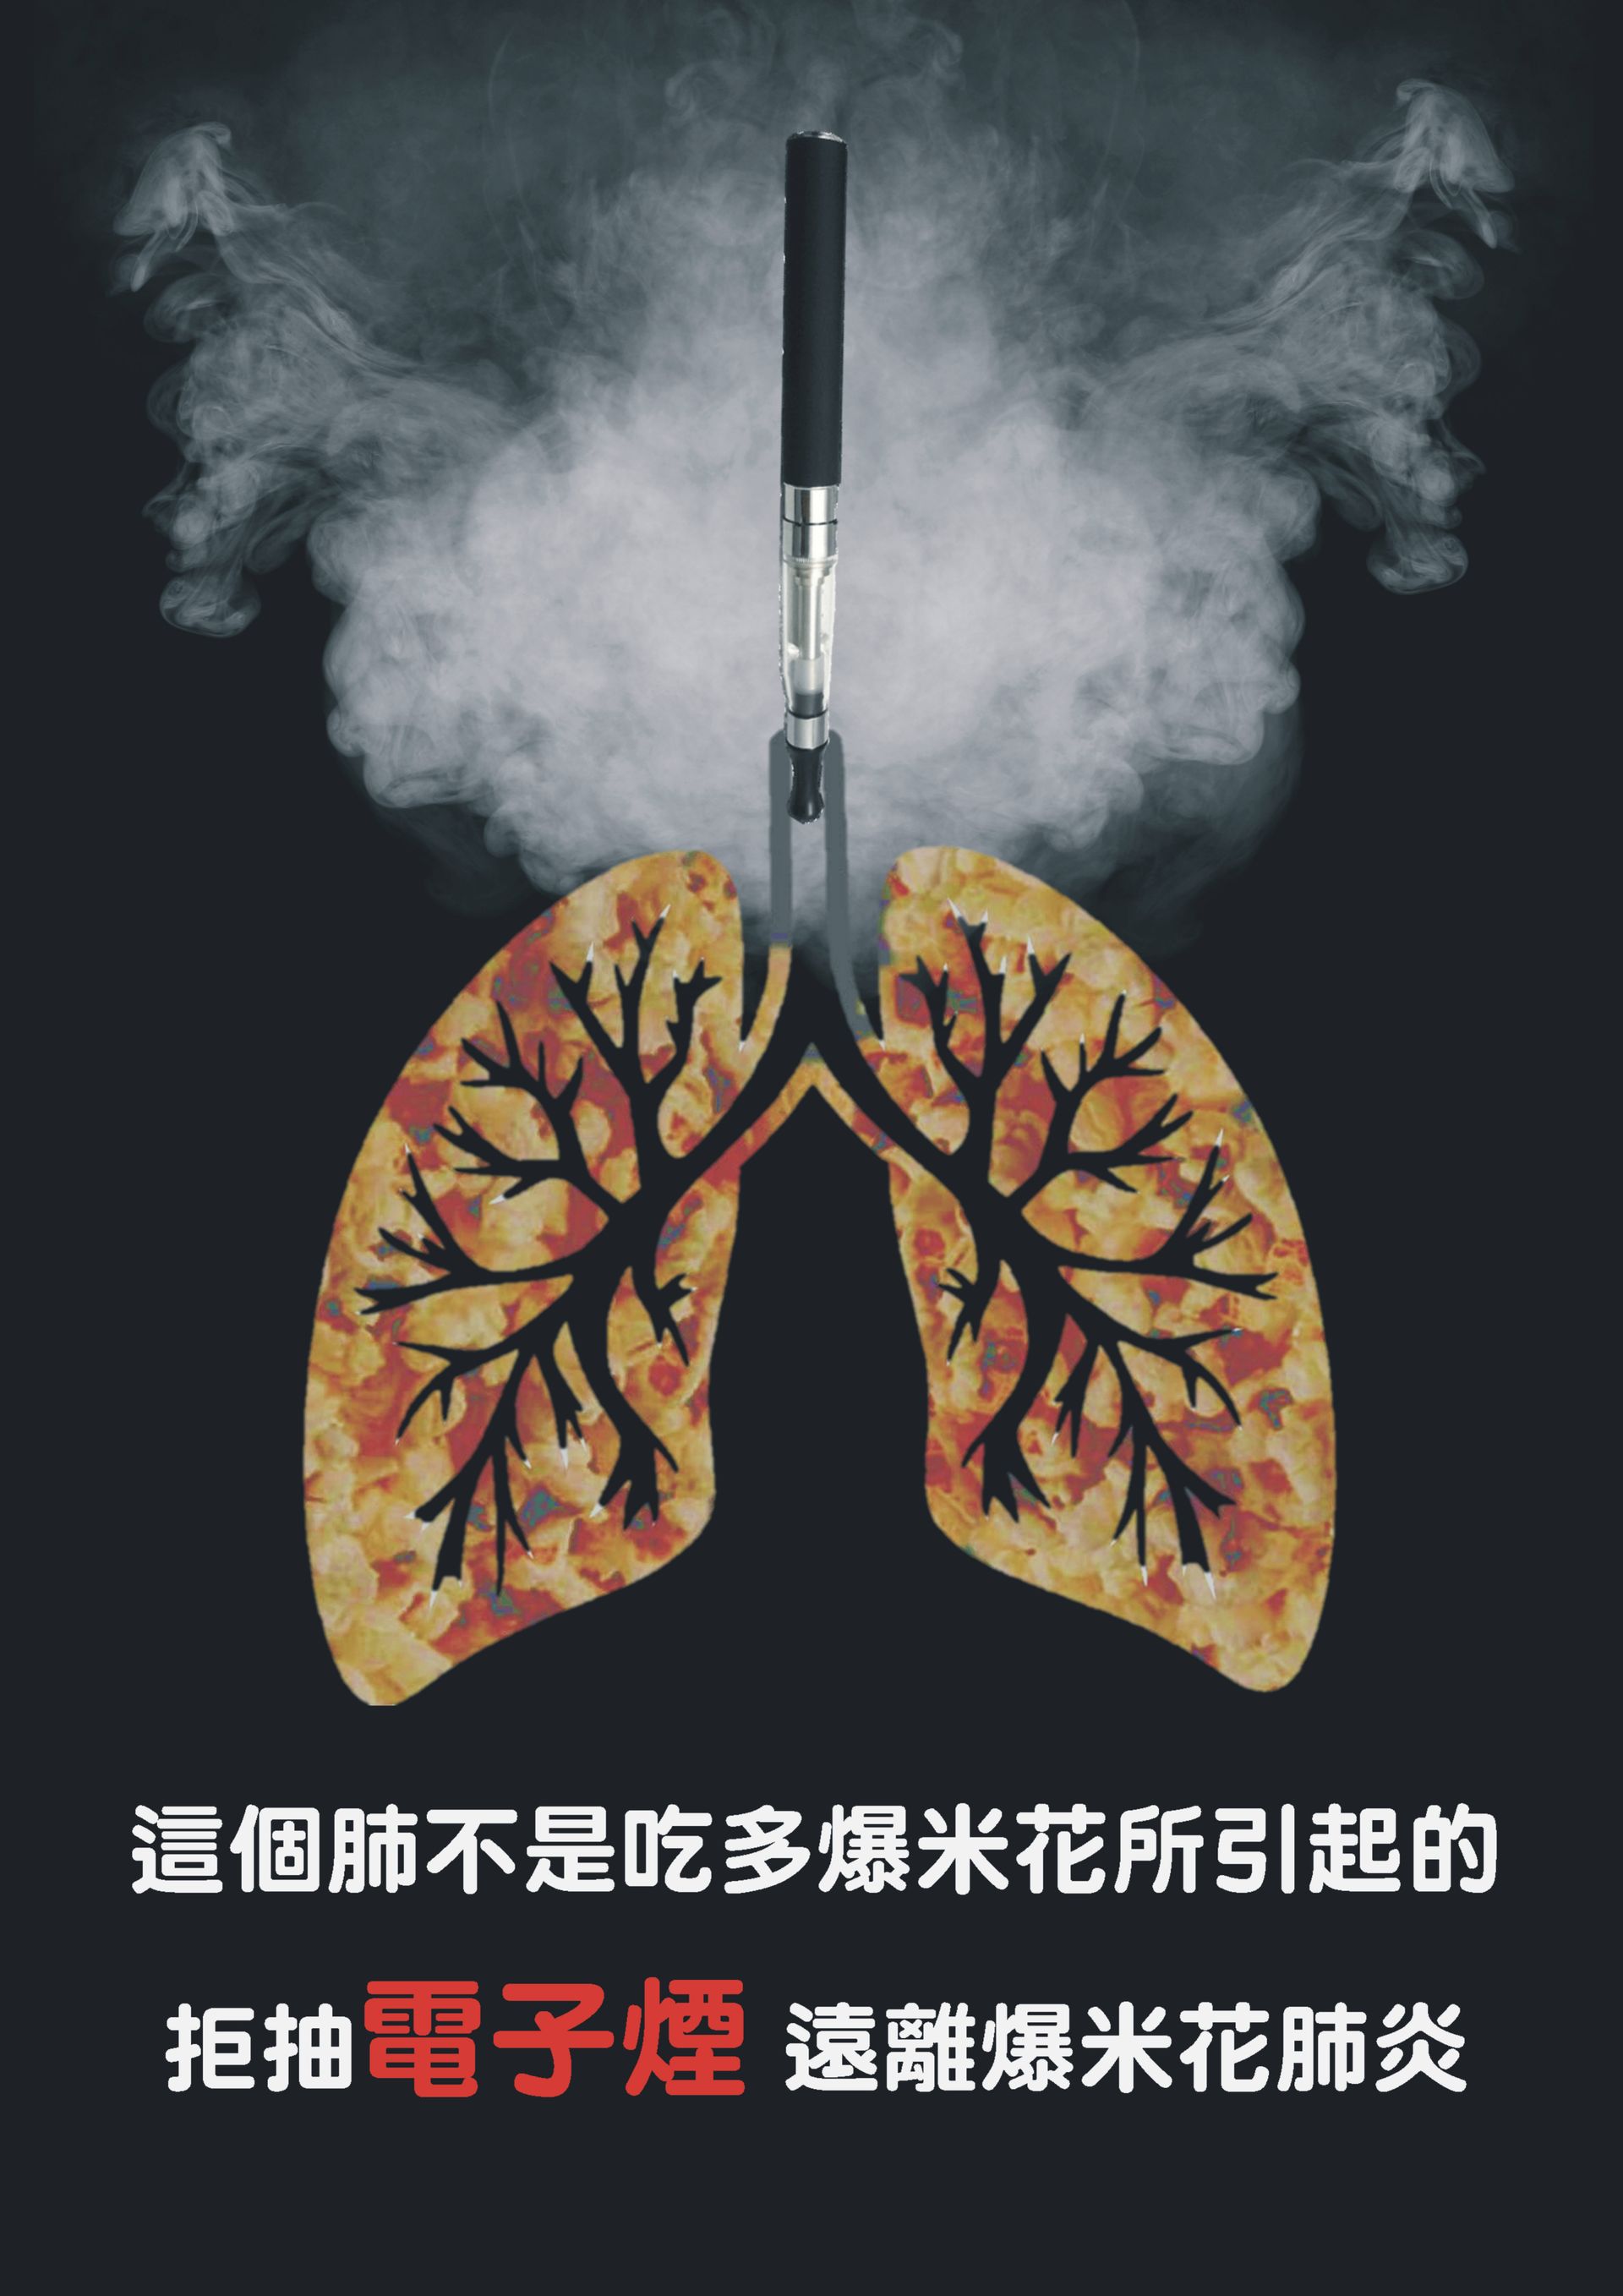 肺之爆米花工廠文章照片